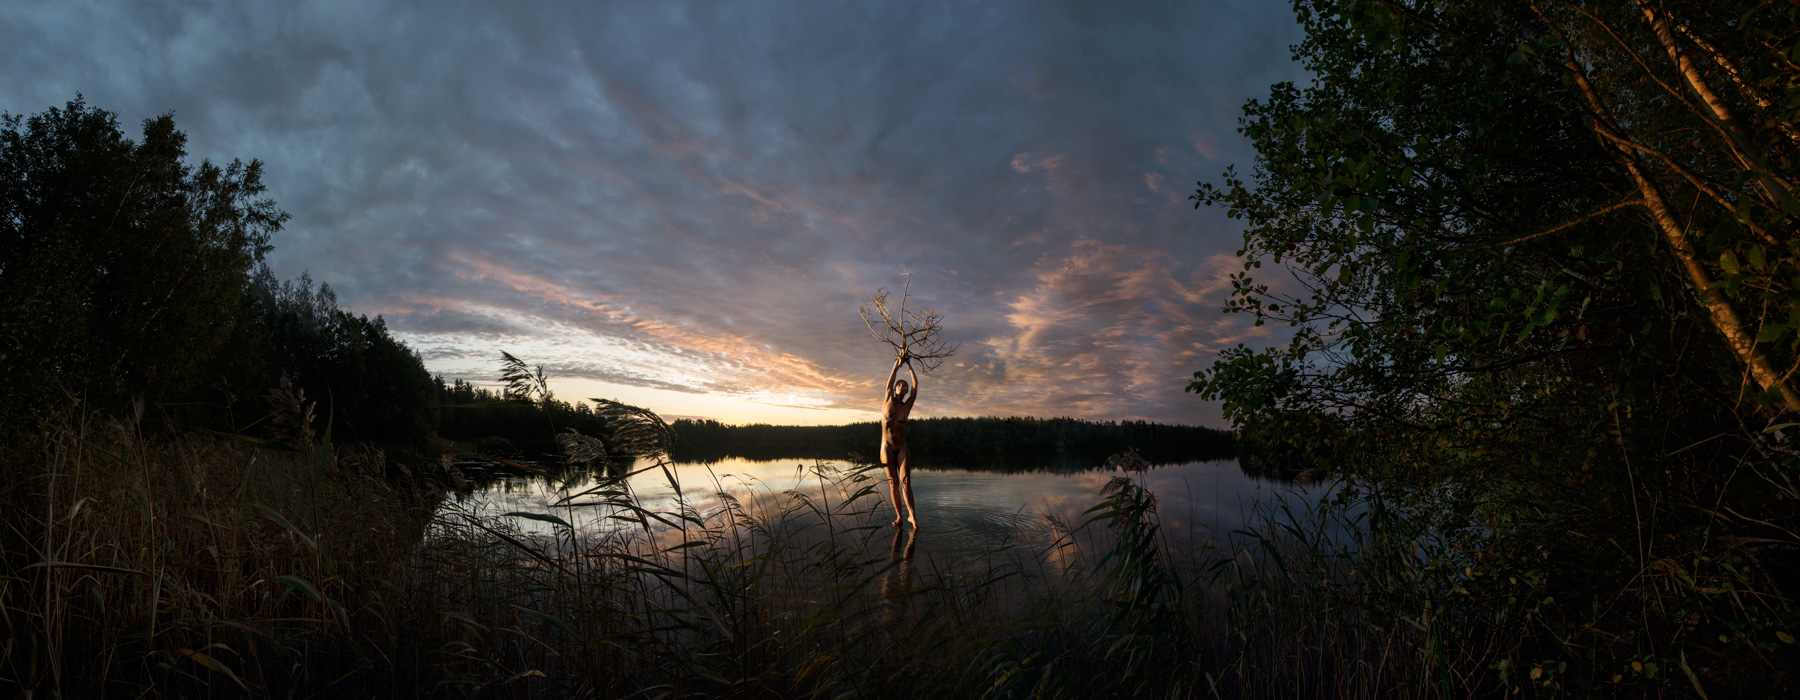 KÄÄNNA JUURI XIV. Fotografía y retoque digital. Lago Kelhajarvi, Hämeenkyrö, Finlandia